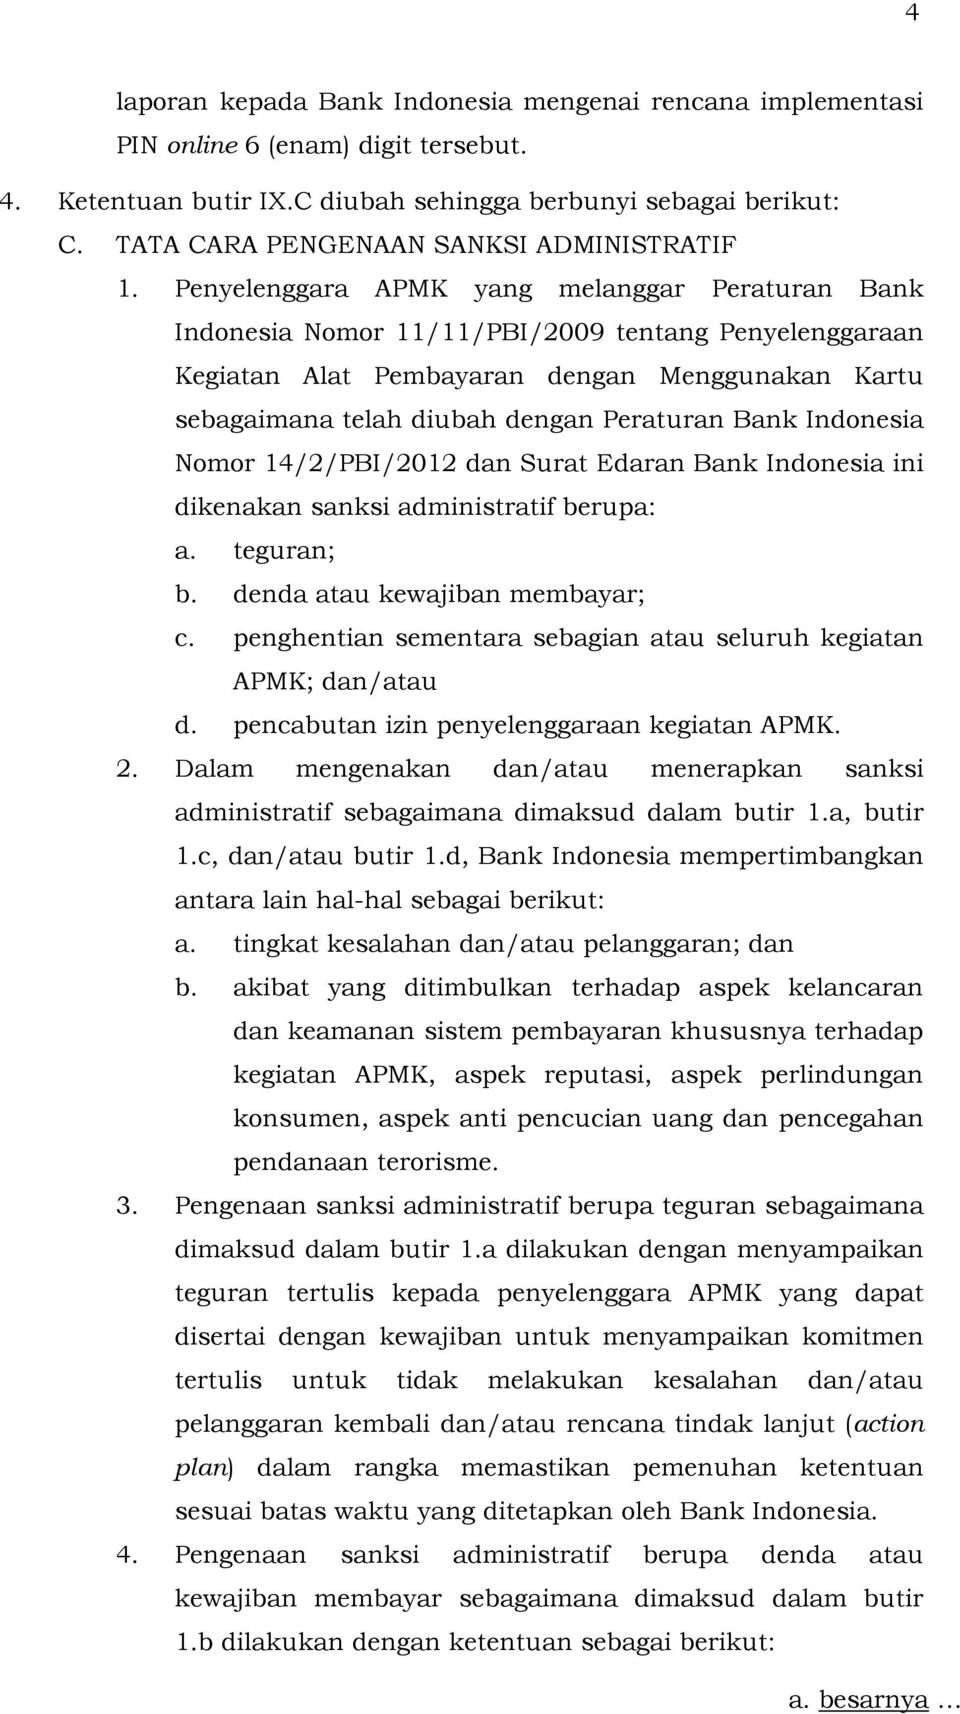 Penyelenggara APMK yang melanggar Peraturan Bank Indonesia Nomor 11/11/PBI/2009 tentang Penyelenggaraan Kegiatan Alat Pembayaran dengan Menggunakan Kartu sebagaimana telah diubah dengan Peraturan